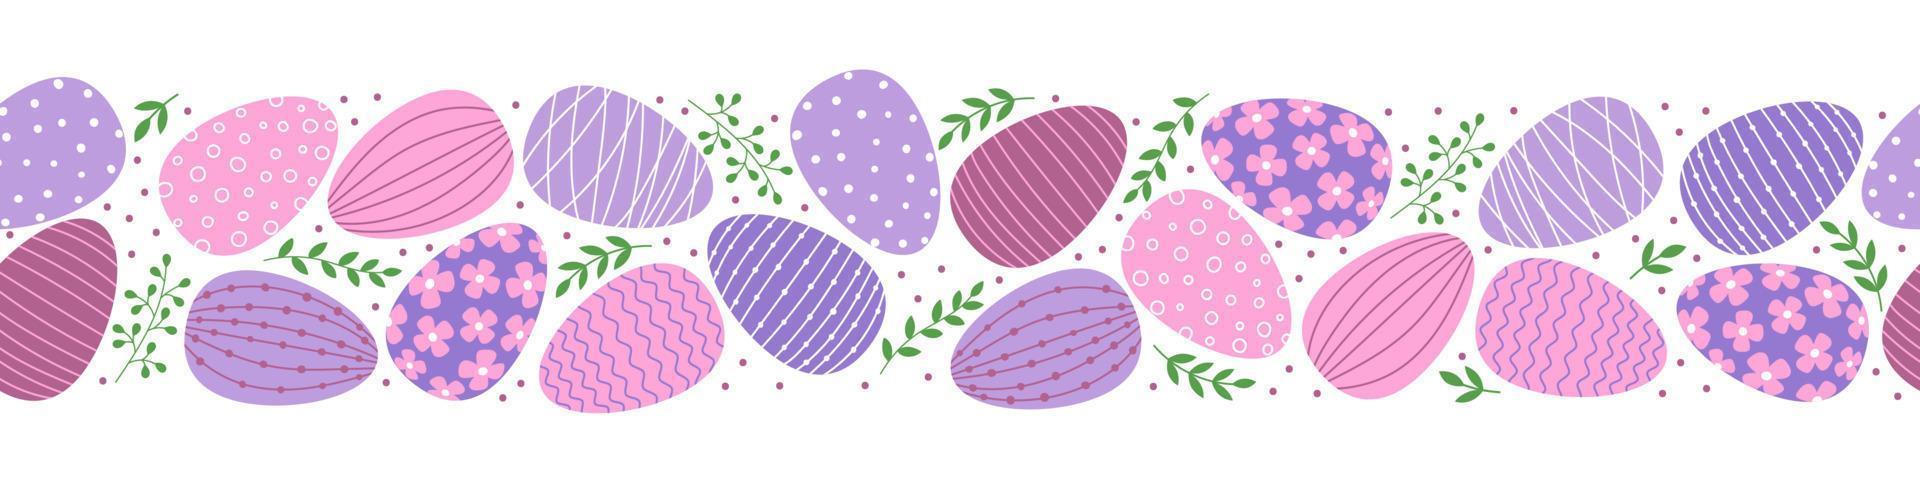 bordo senza cuciture con uova e foglie decorate di pasqua. uova in stile piatto nei colori rosa e viola. vettore